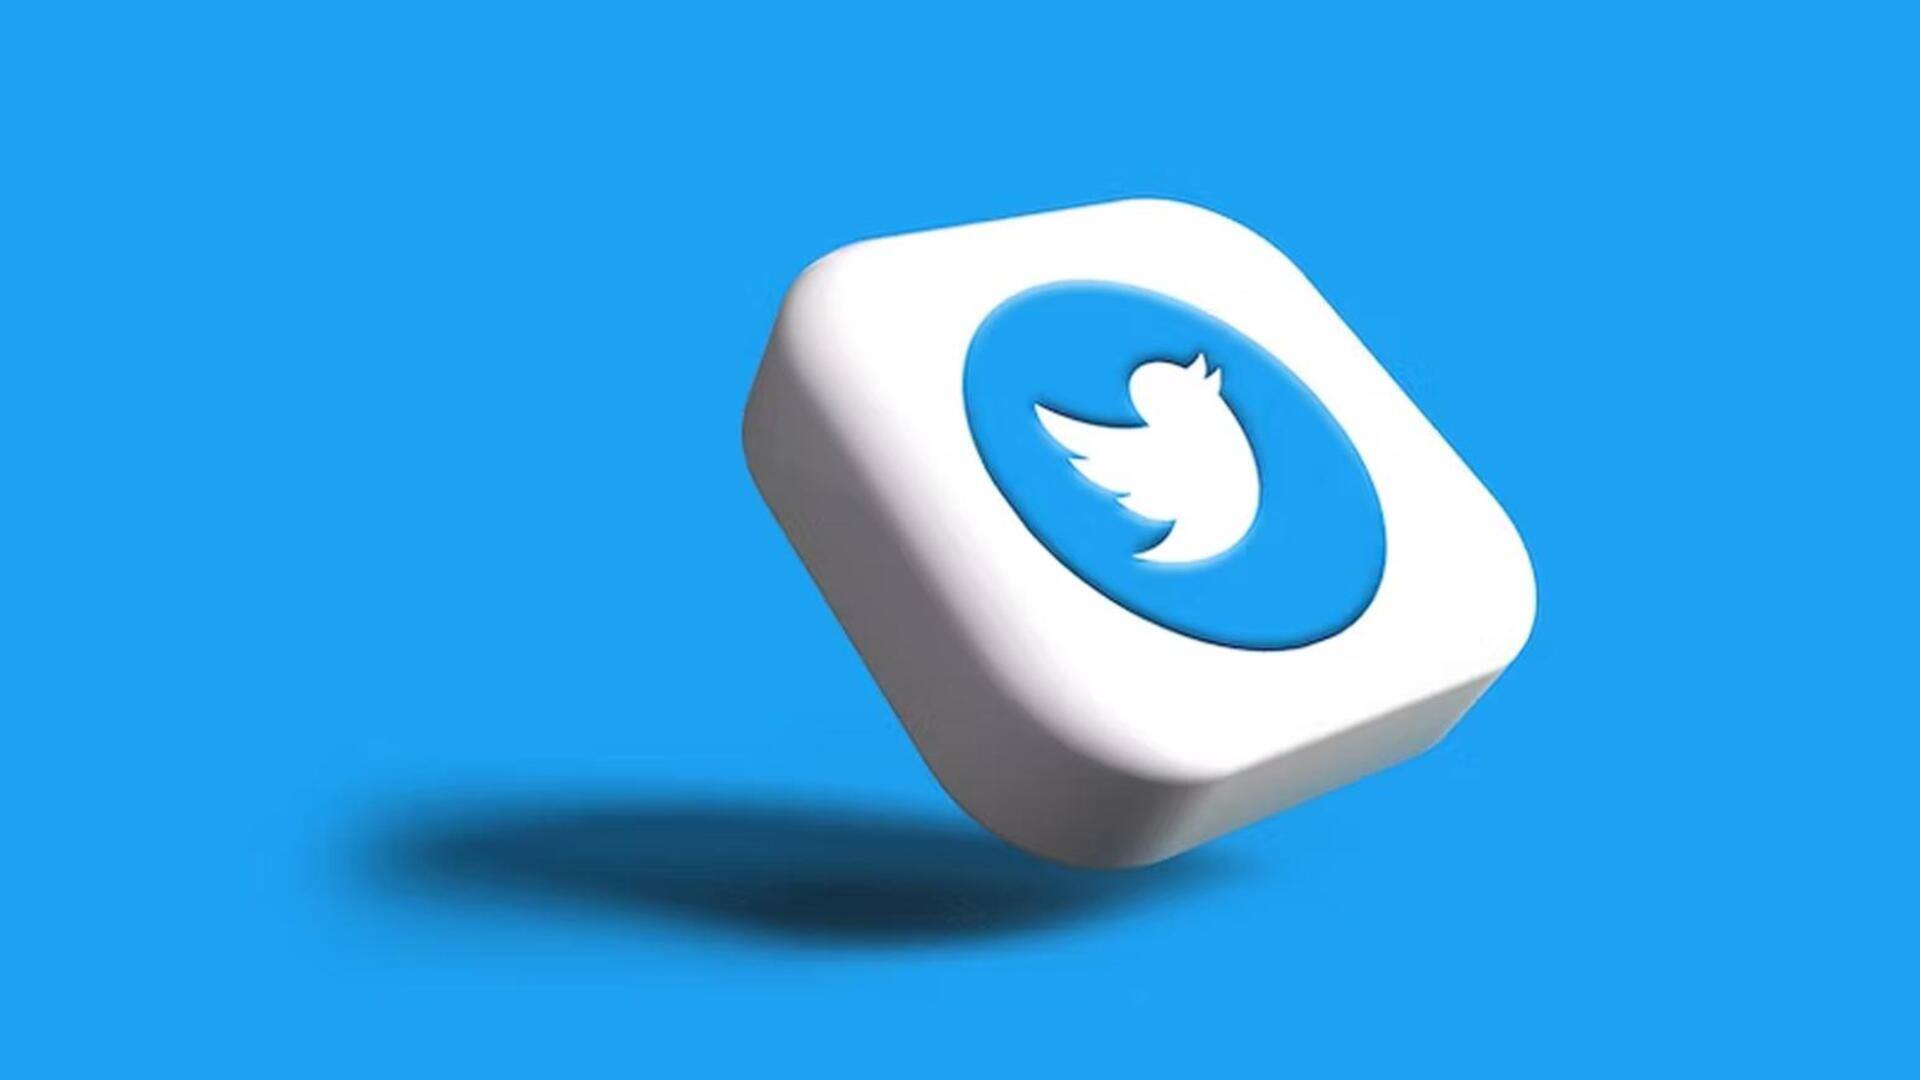 ट्विटर ने लॉन्च किया ट्वीटडेक का नया वर्जन, सिर्फ वेरीफाइड यूजर्स कर सकेंगे उपयोग